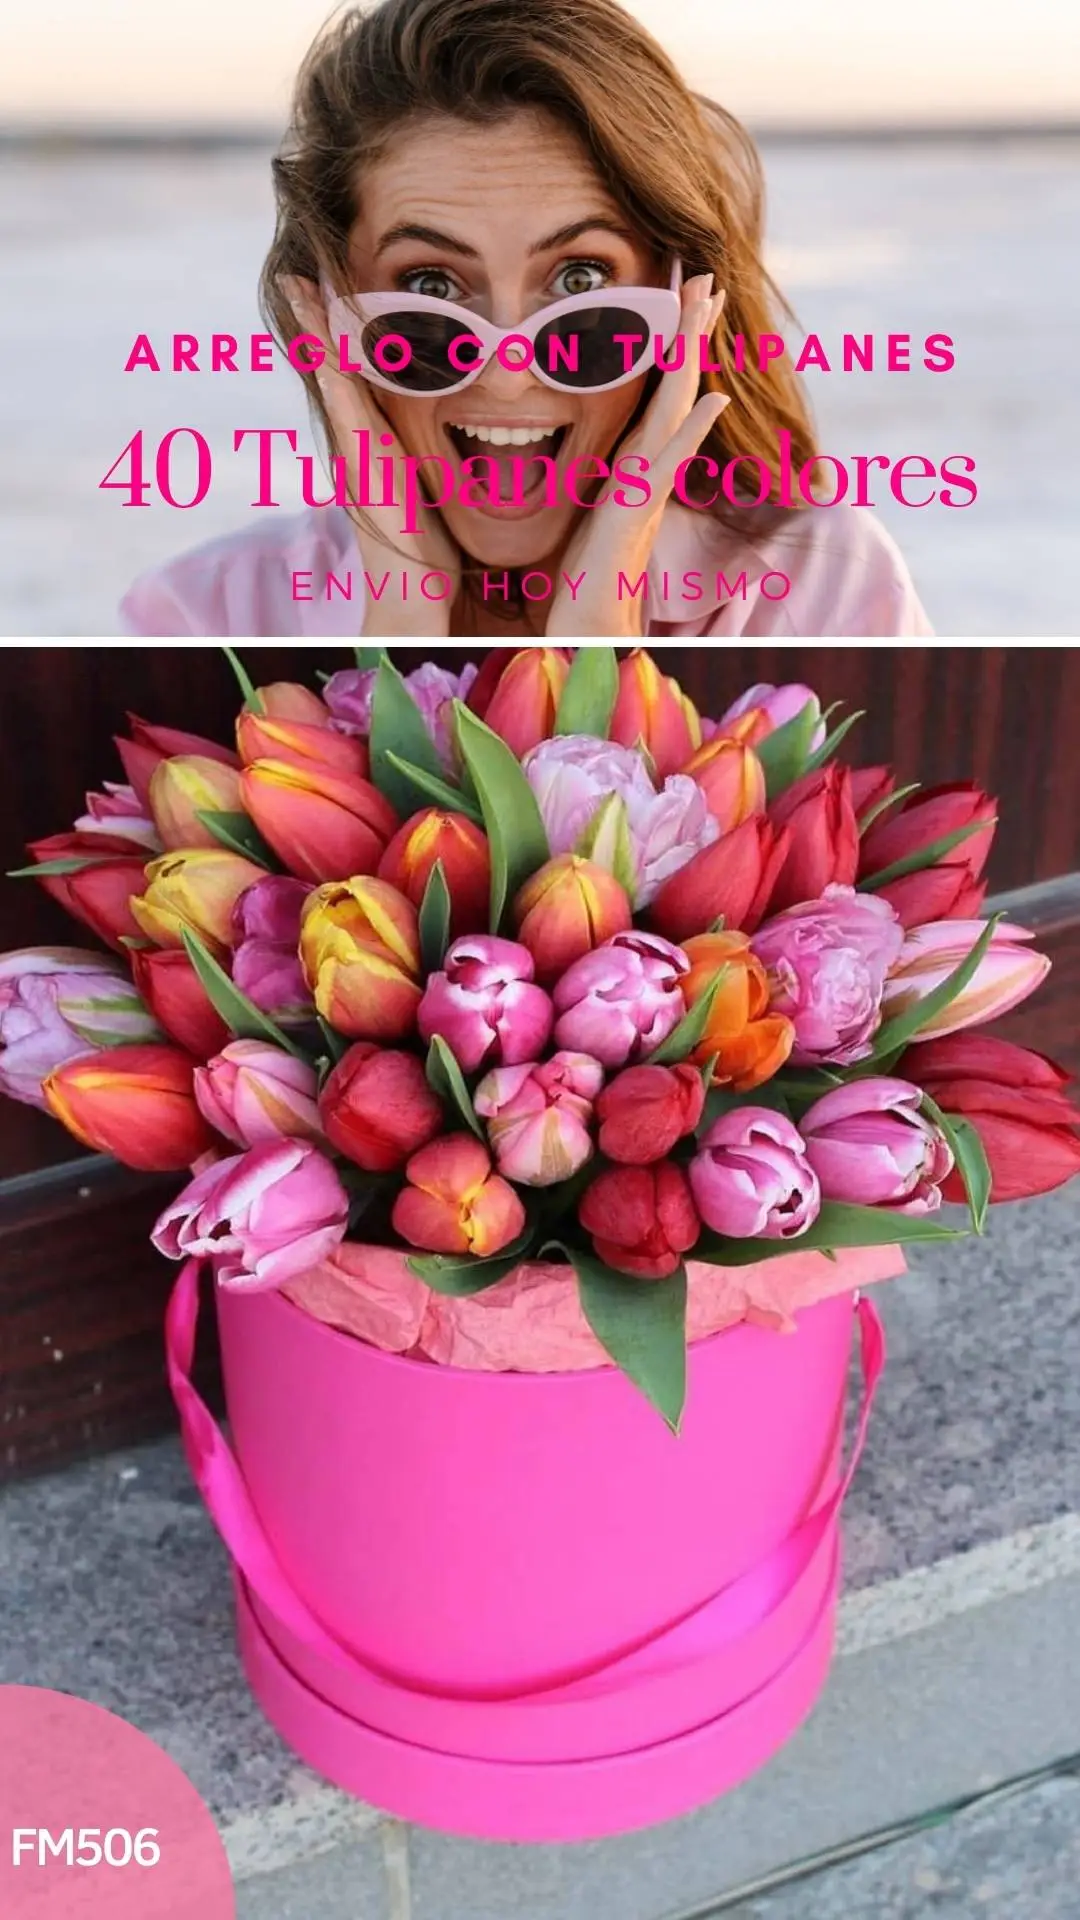 Caja con 40 Tulipanes gran color